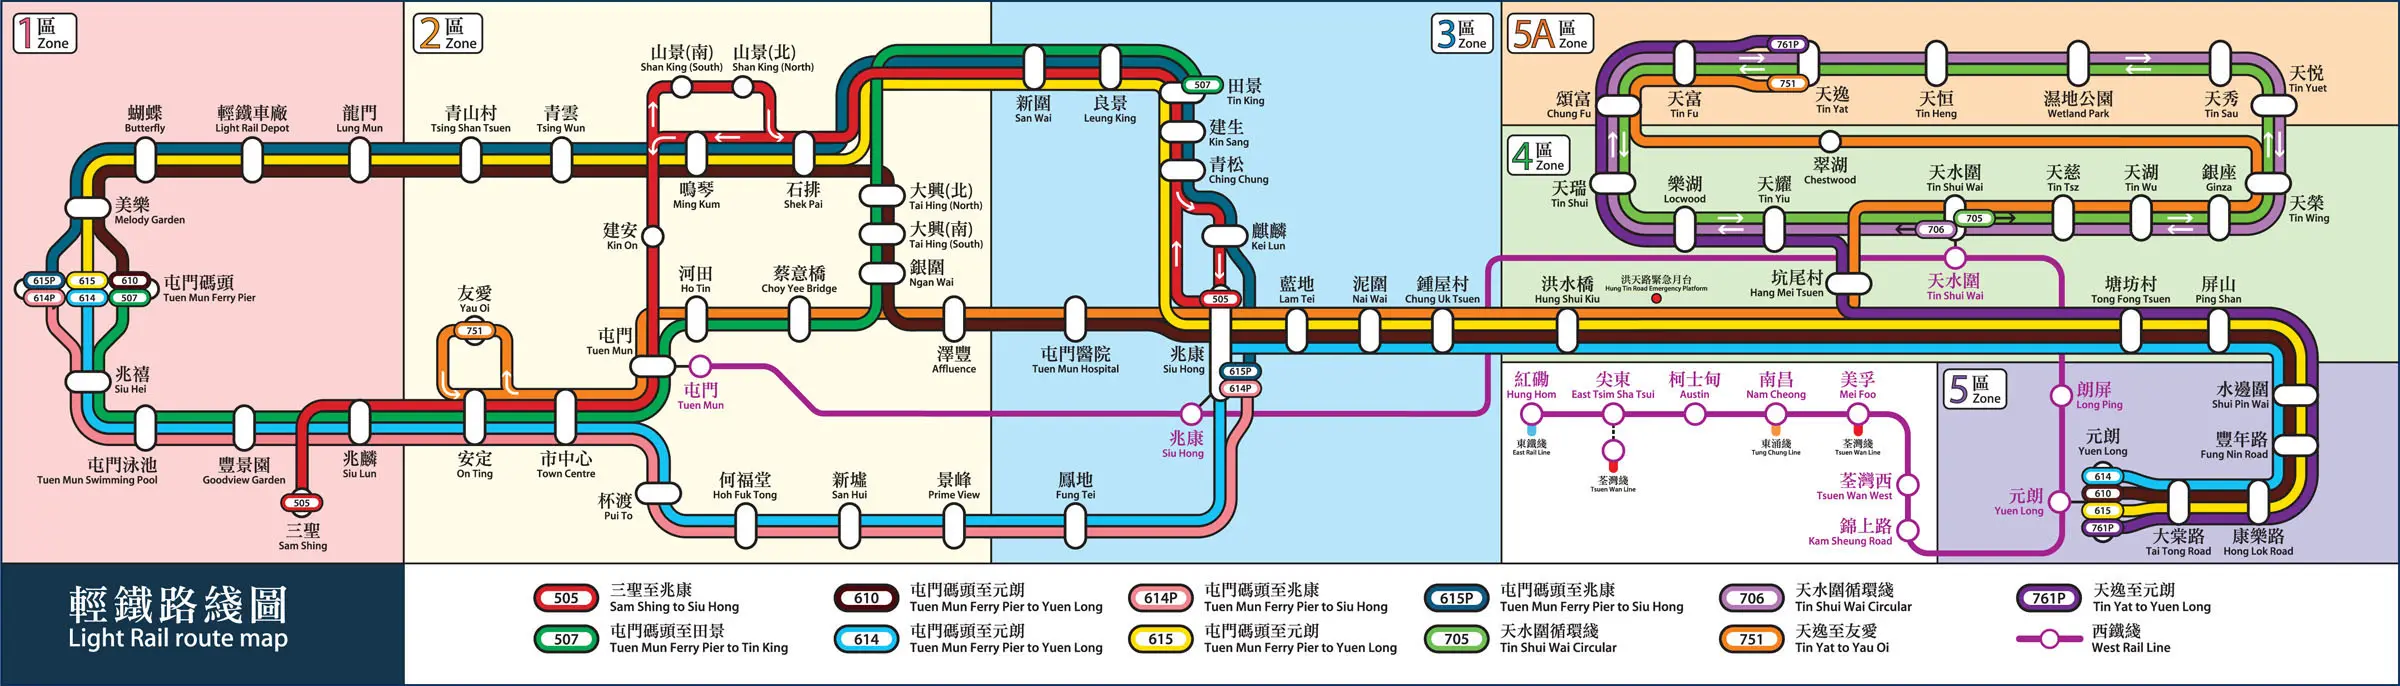 Hong Kong light rail map